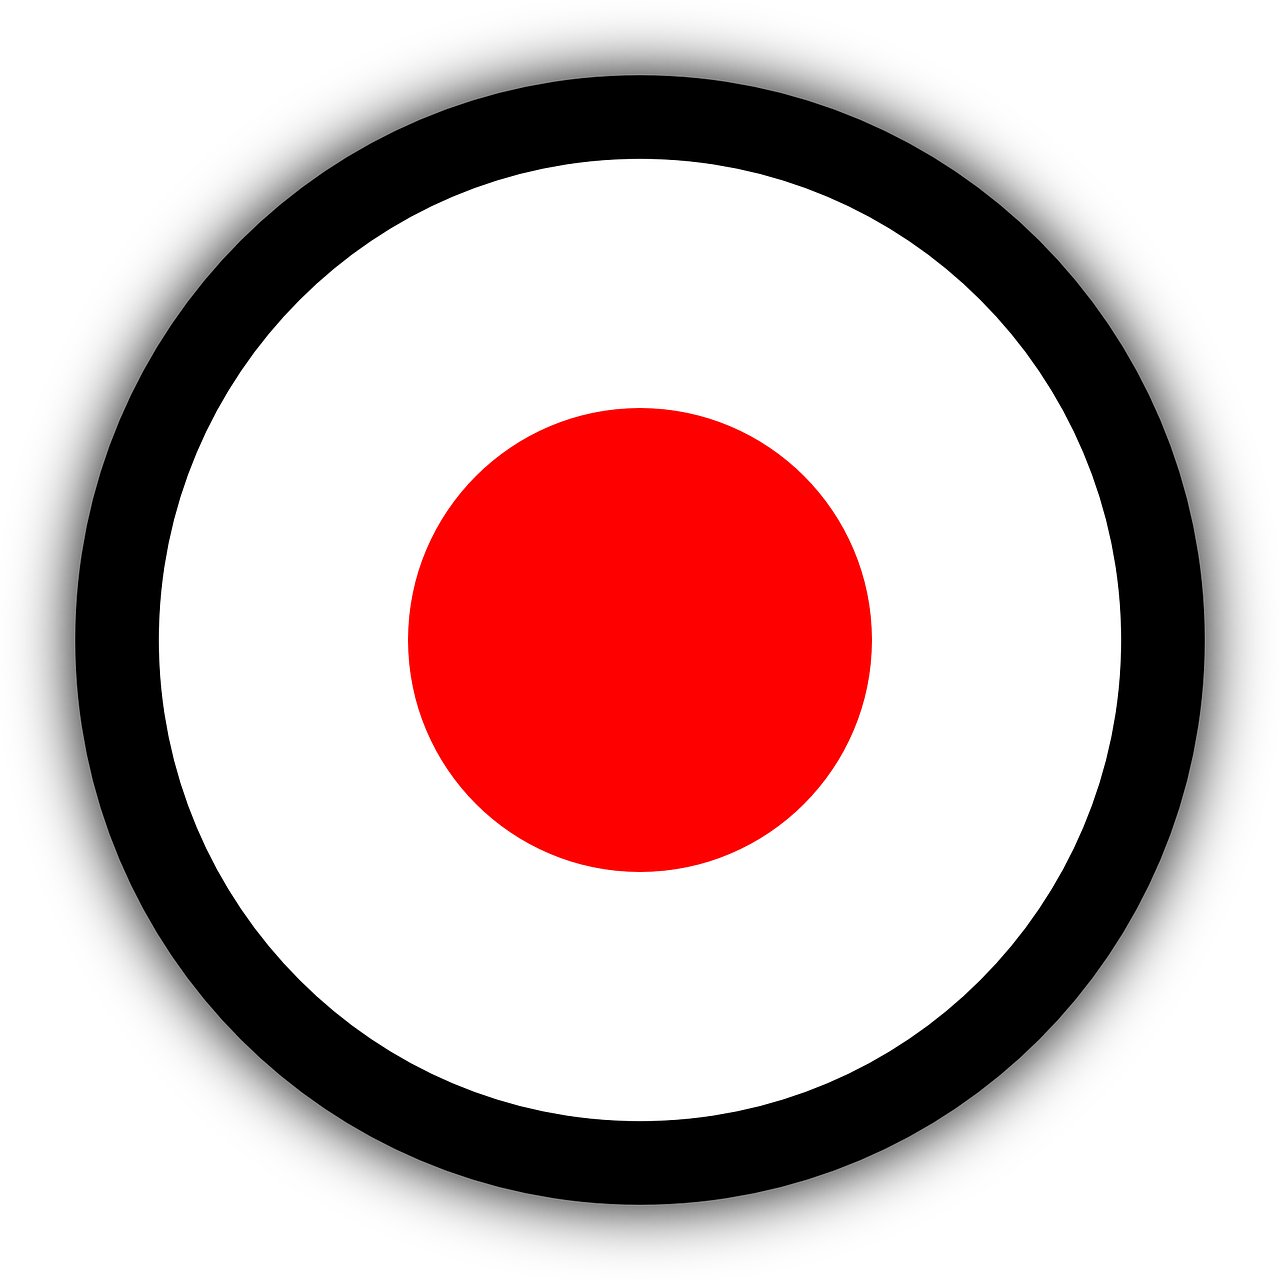 Точка по середине знак. Значок точка. Иконка красный круг. Круг с красной точкой.